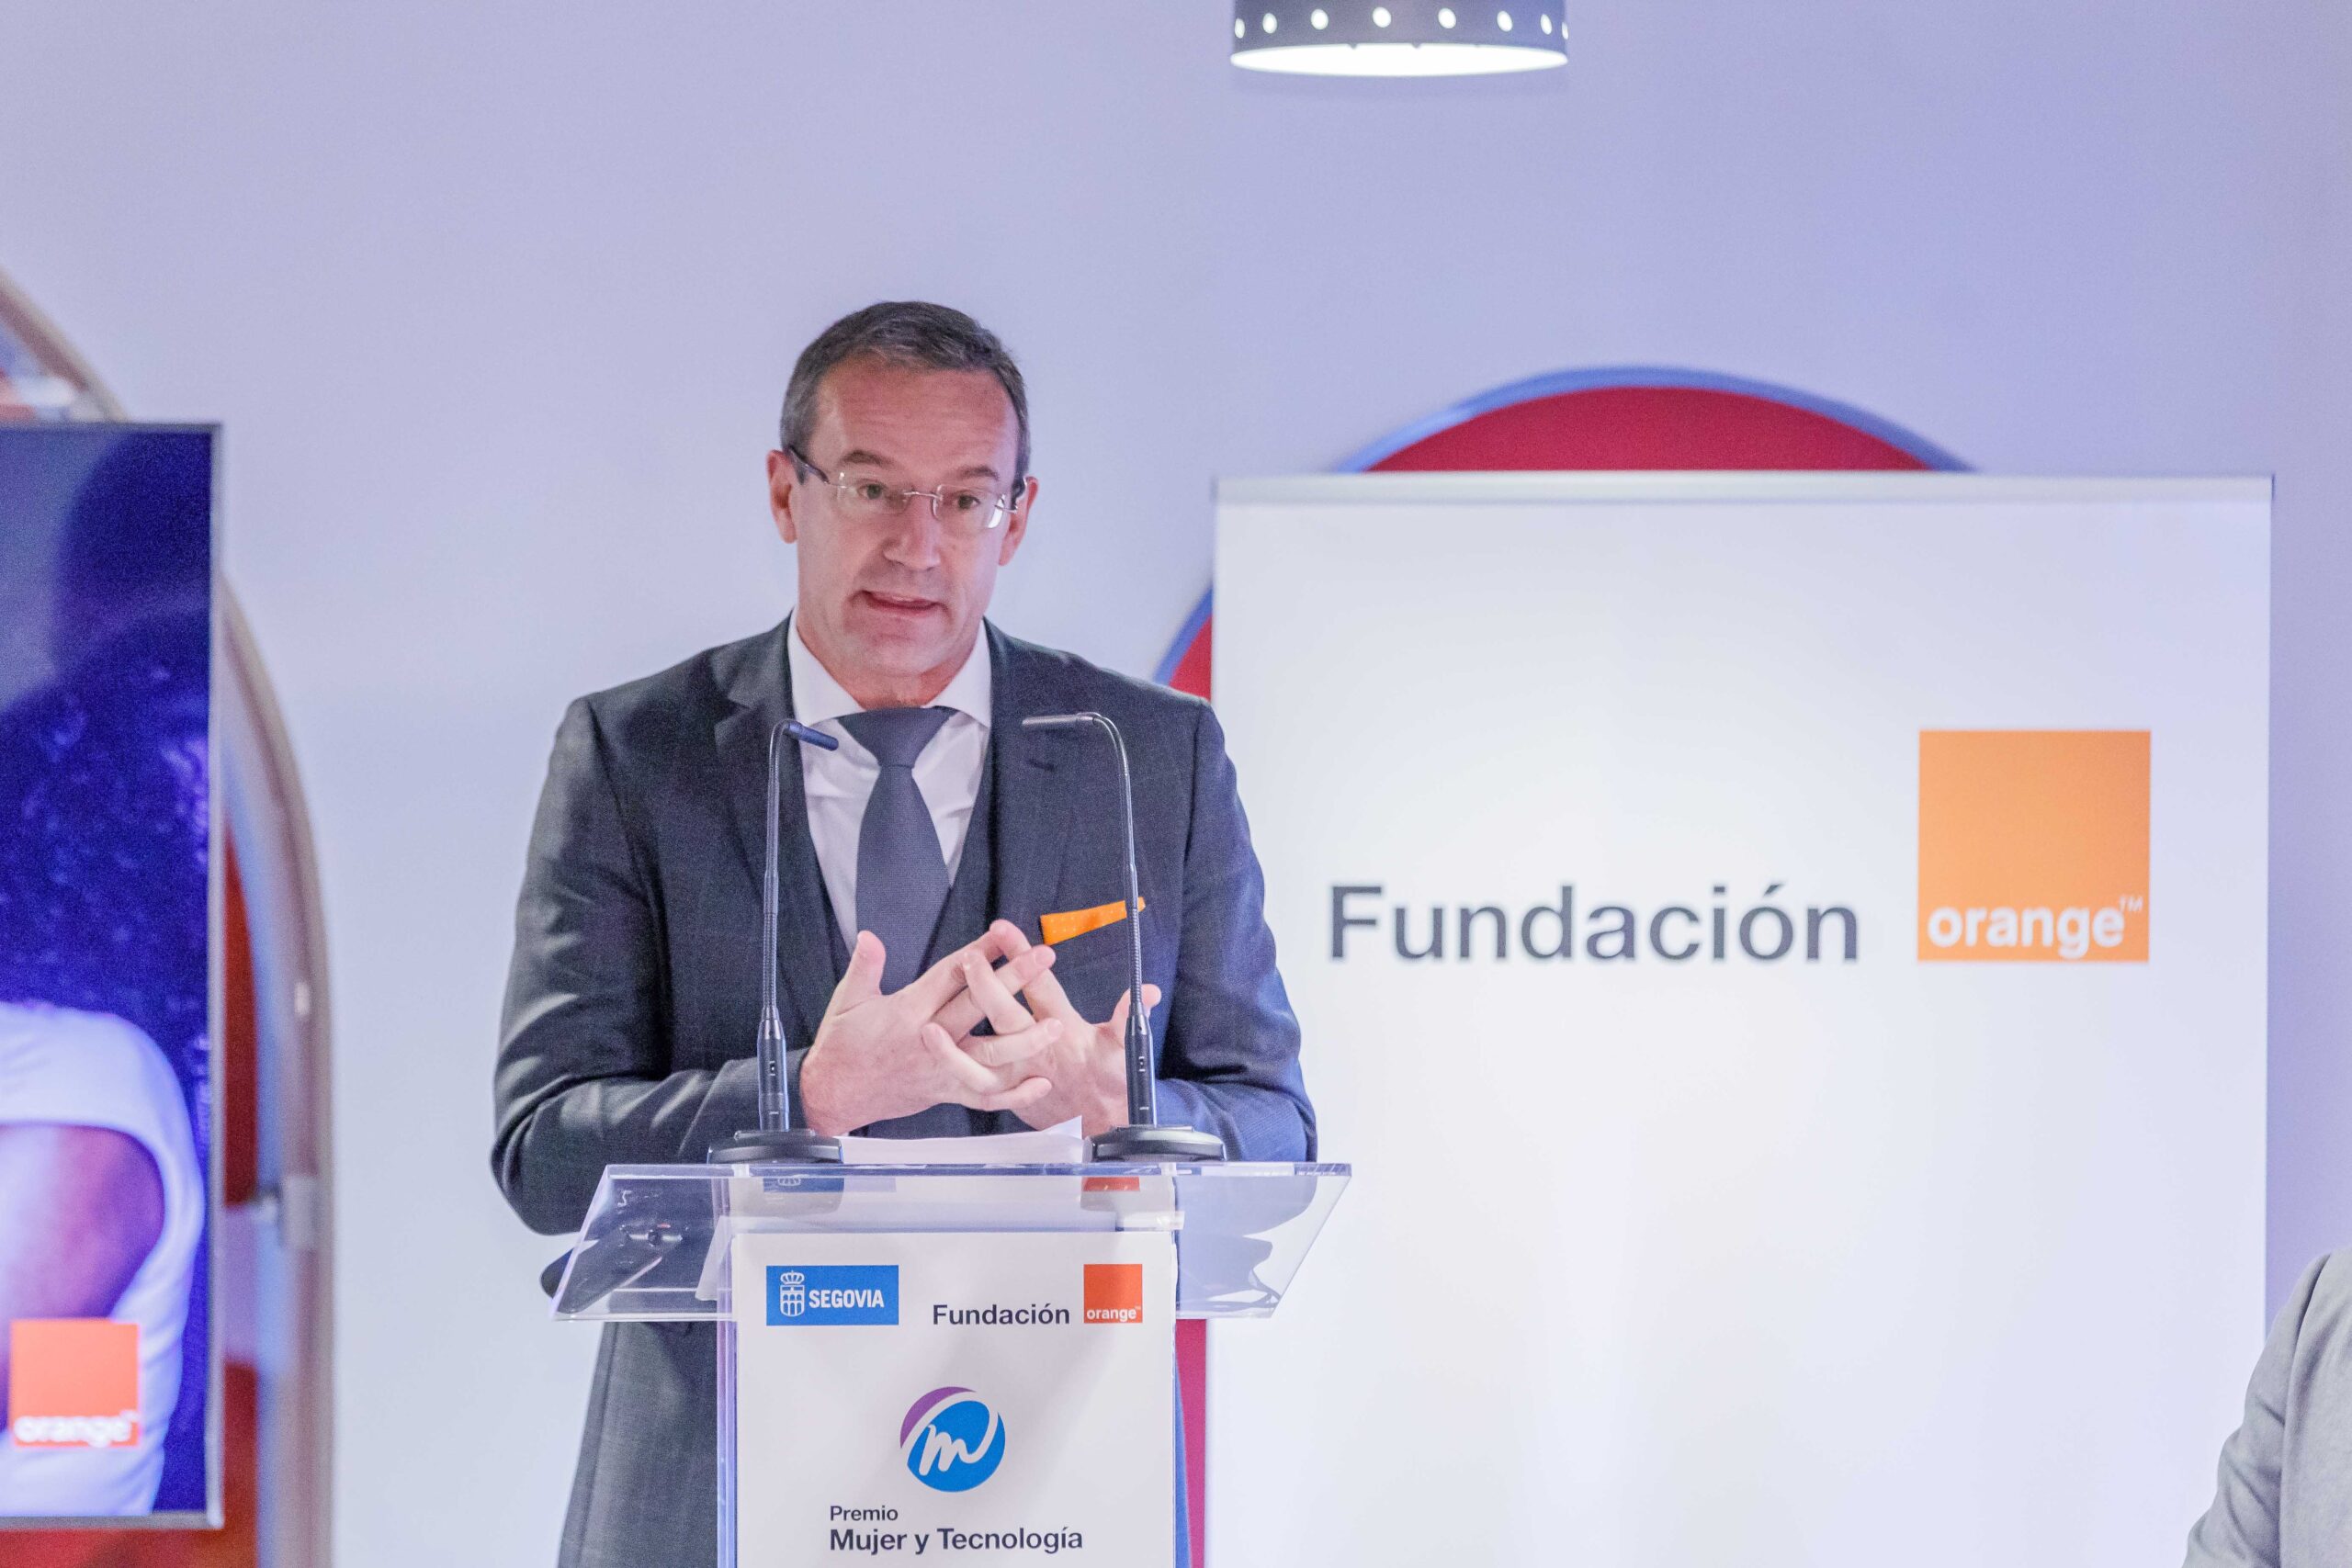 Orange gana 1.111 millones en España en su último año antes de la fusión con MásMóvil